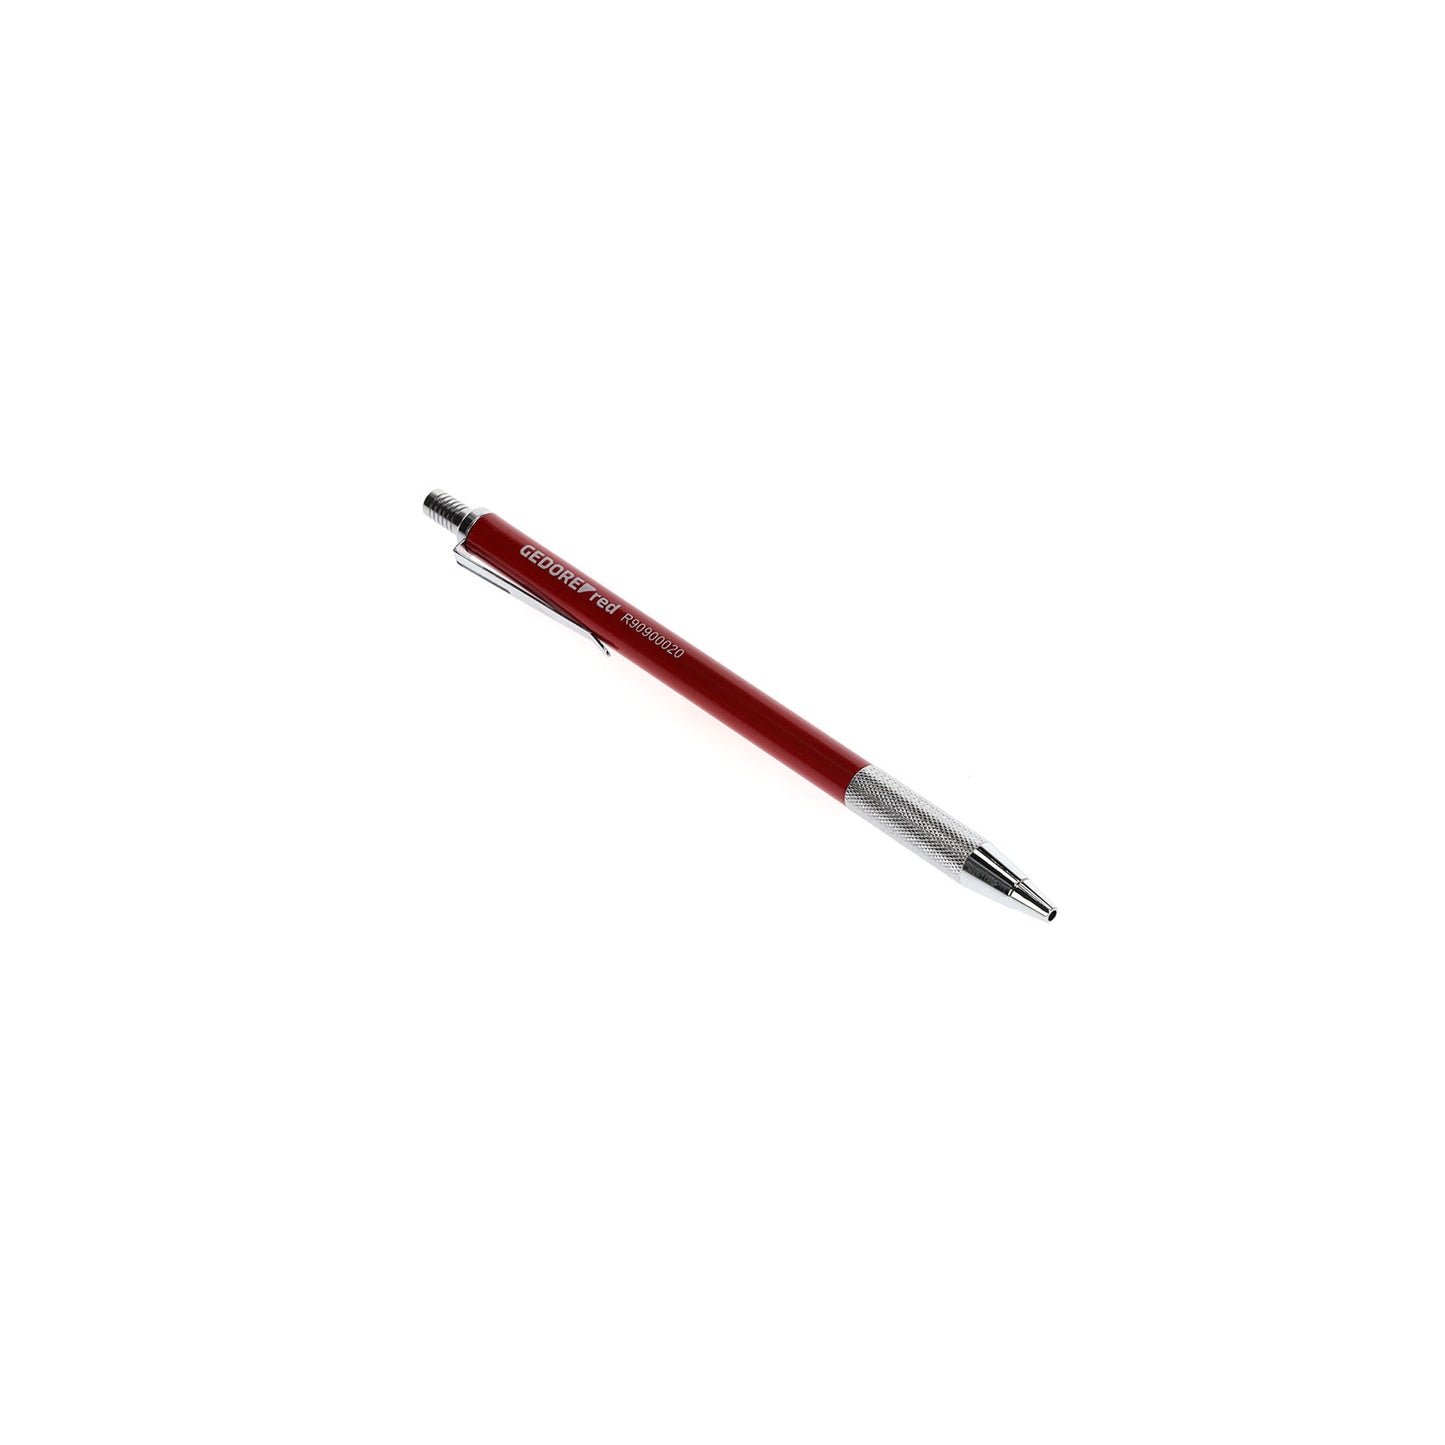 GEDORE rouge R90900020 - Pointe à tracer en carbure de tungstène avec clip 150mm (3301433)